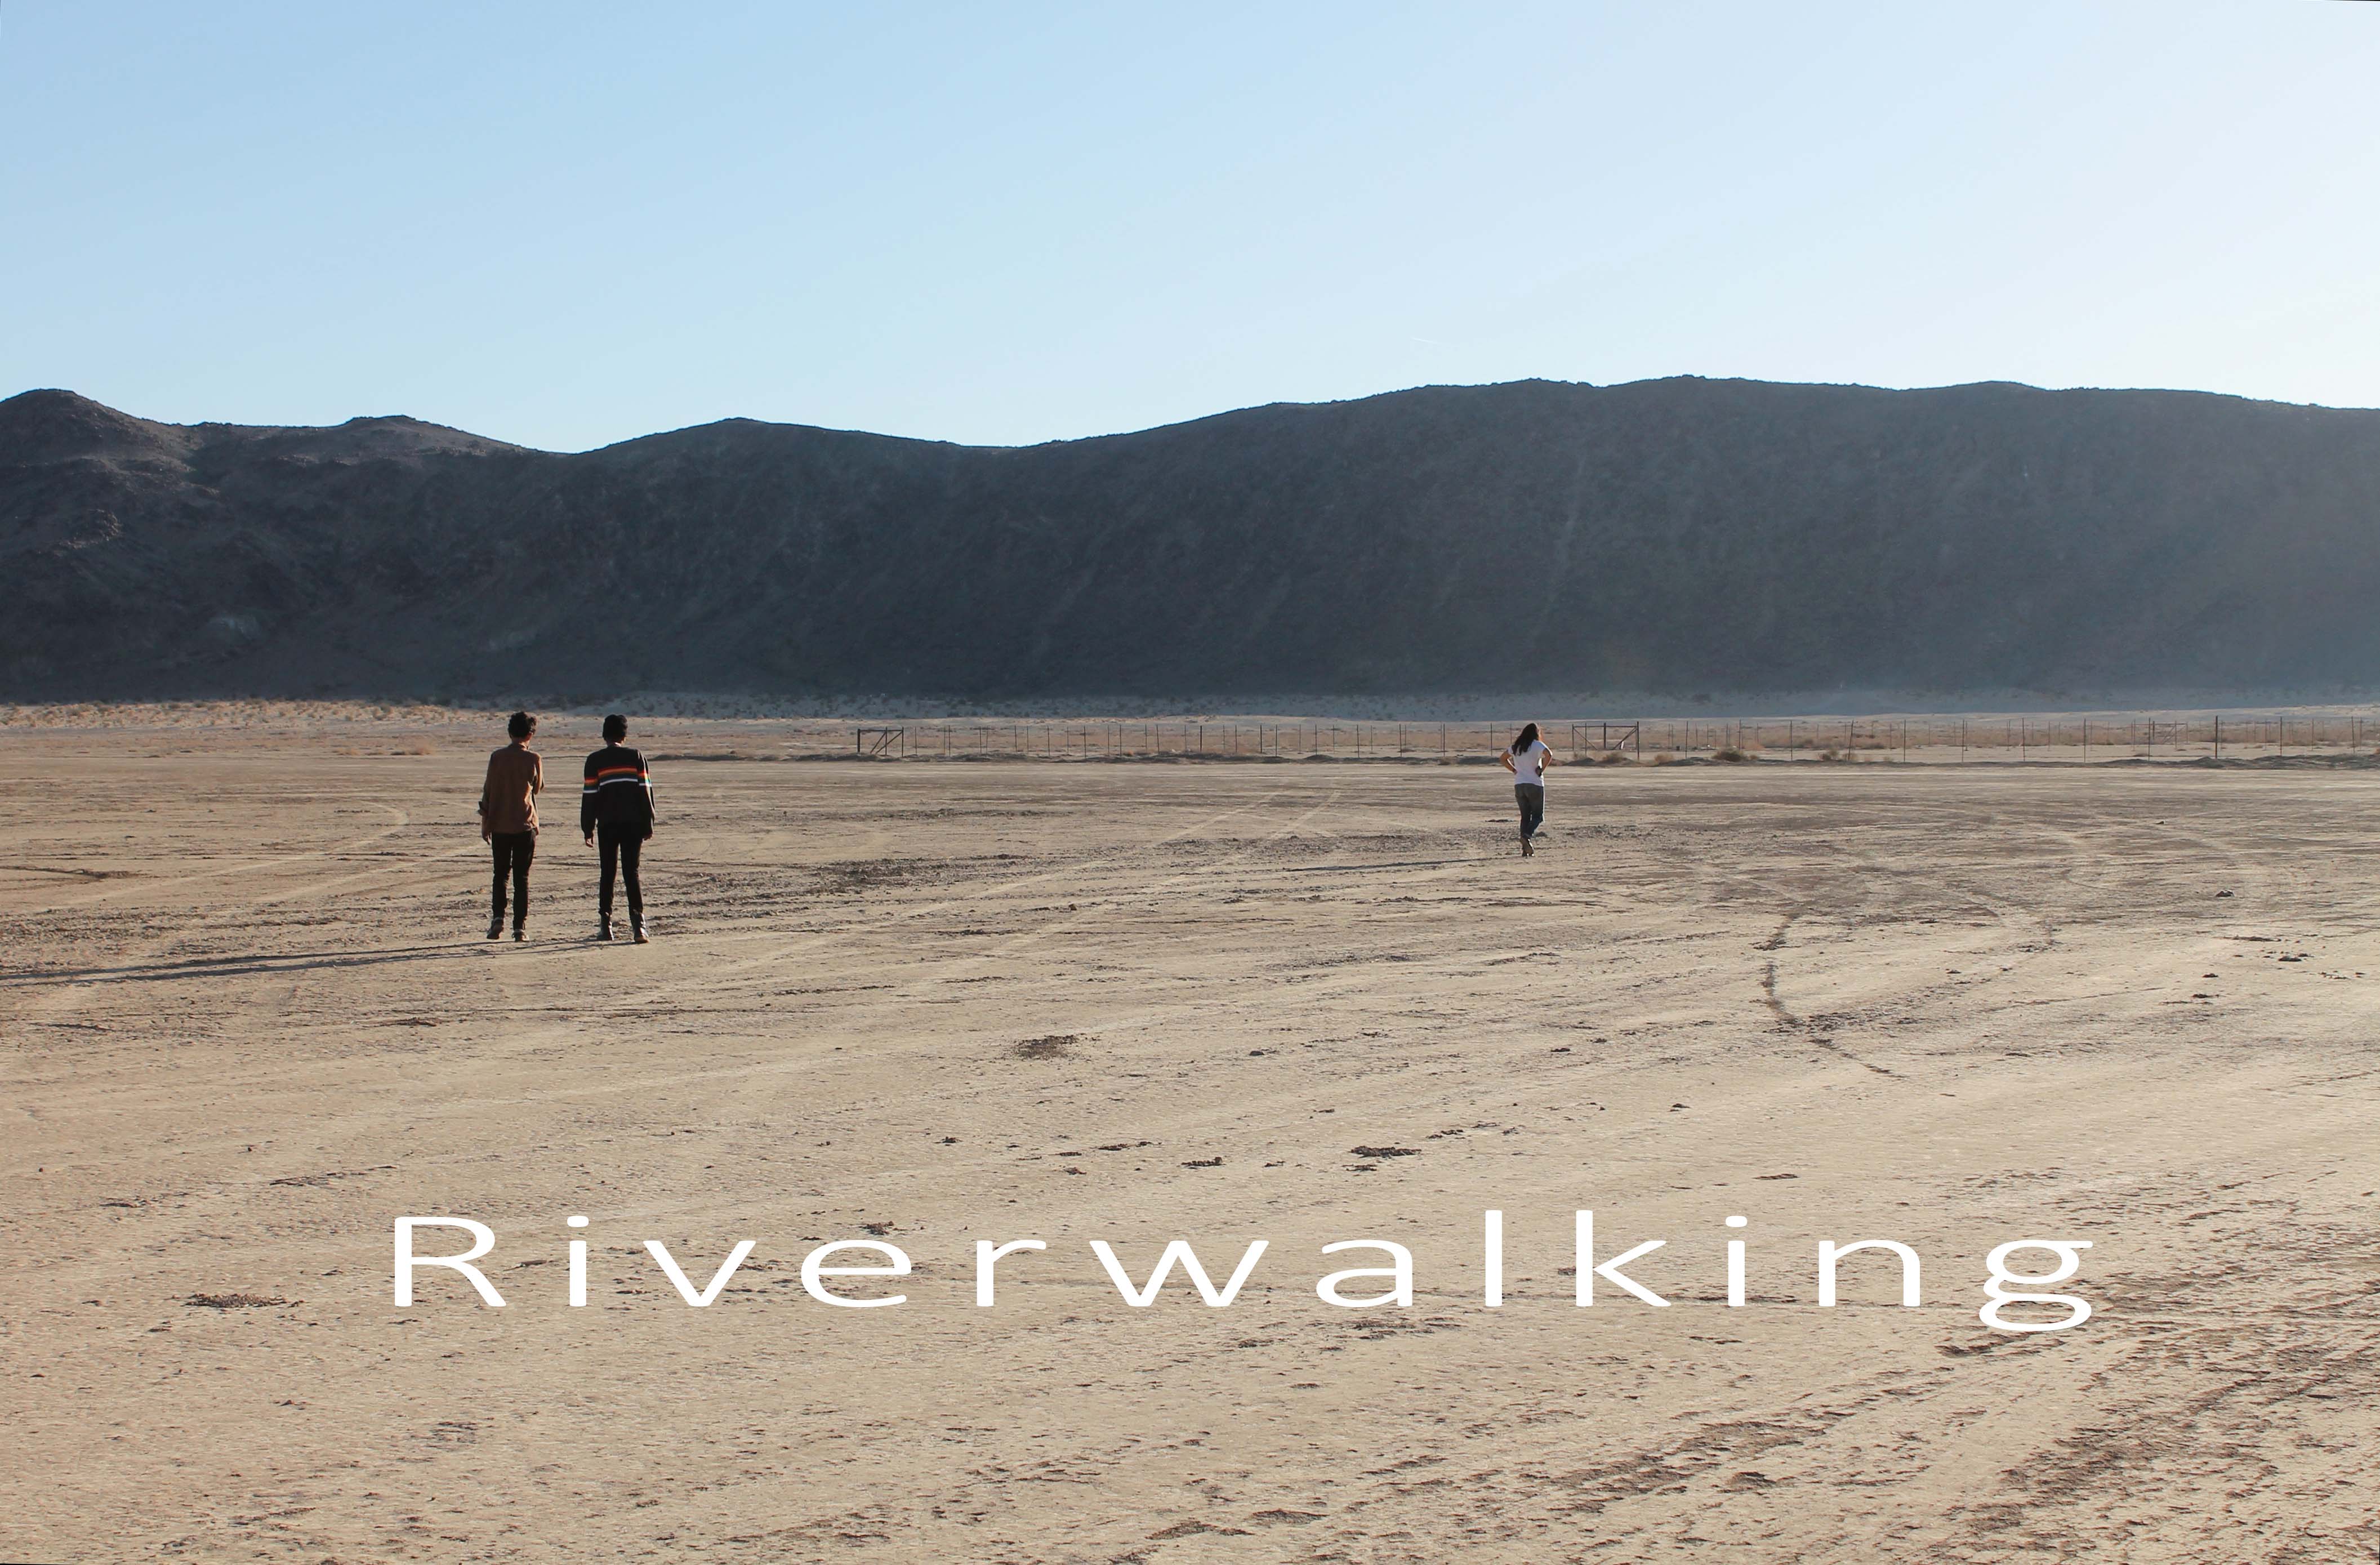 Riverwalking – Introduction